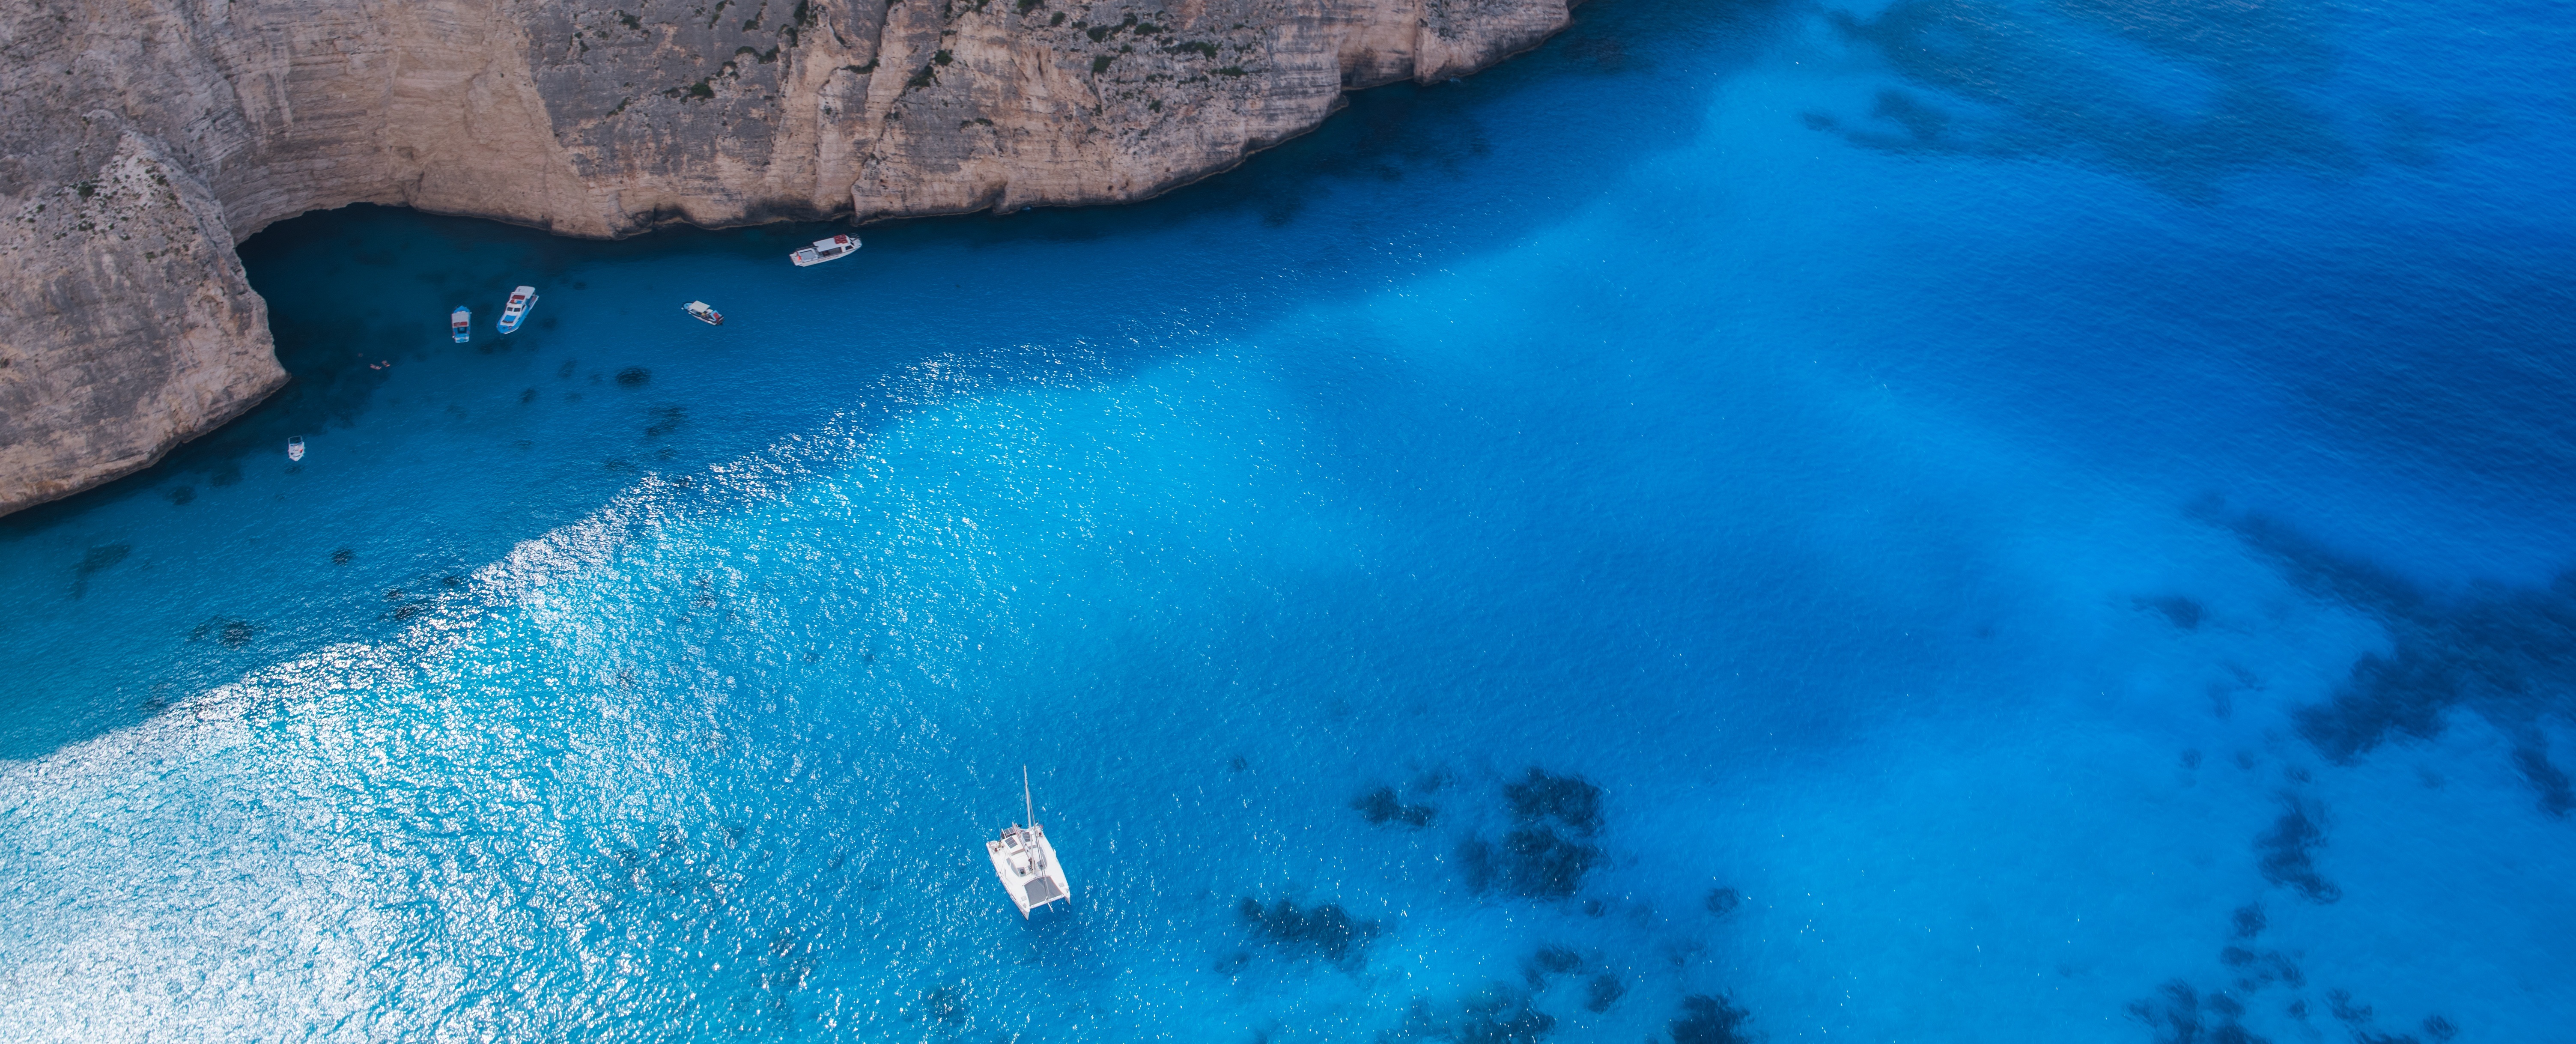 免费照片一幅蓝色泻湖中孤独帆船的照片。